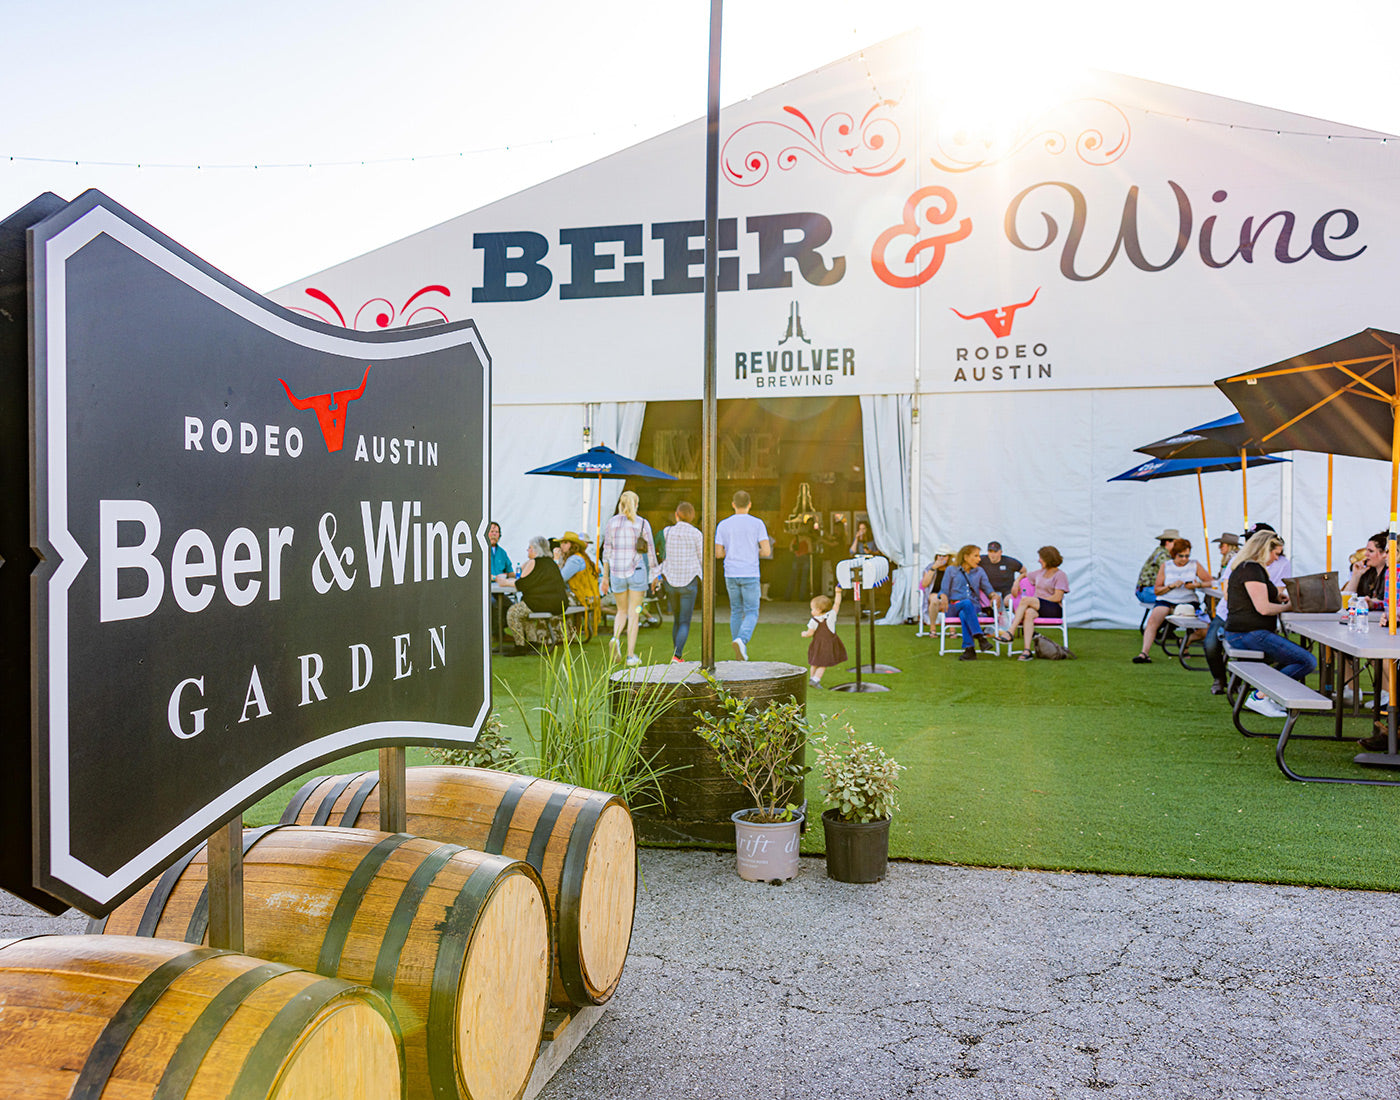 Rodeo Austin Beer & Wine Garden tent exterior